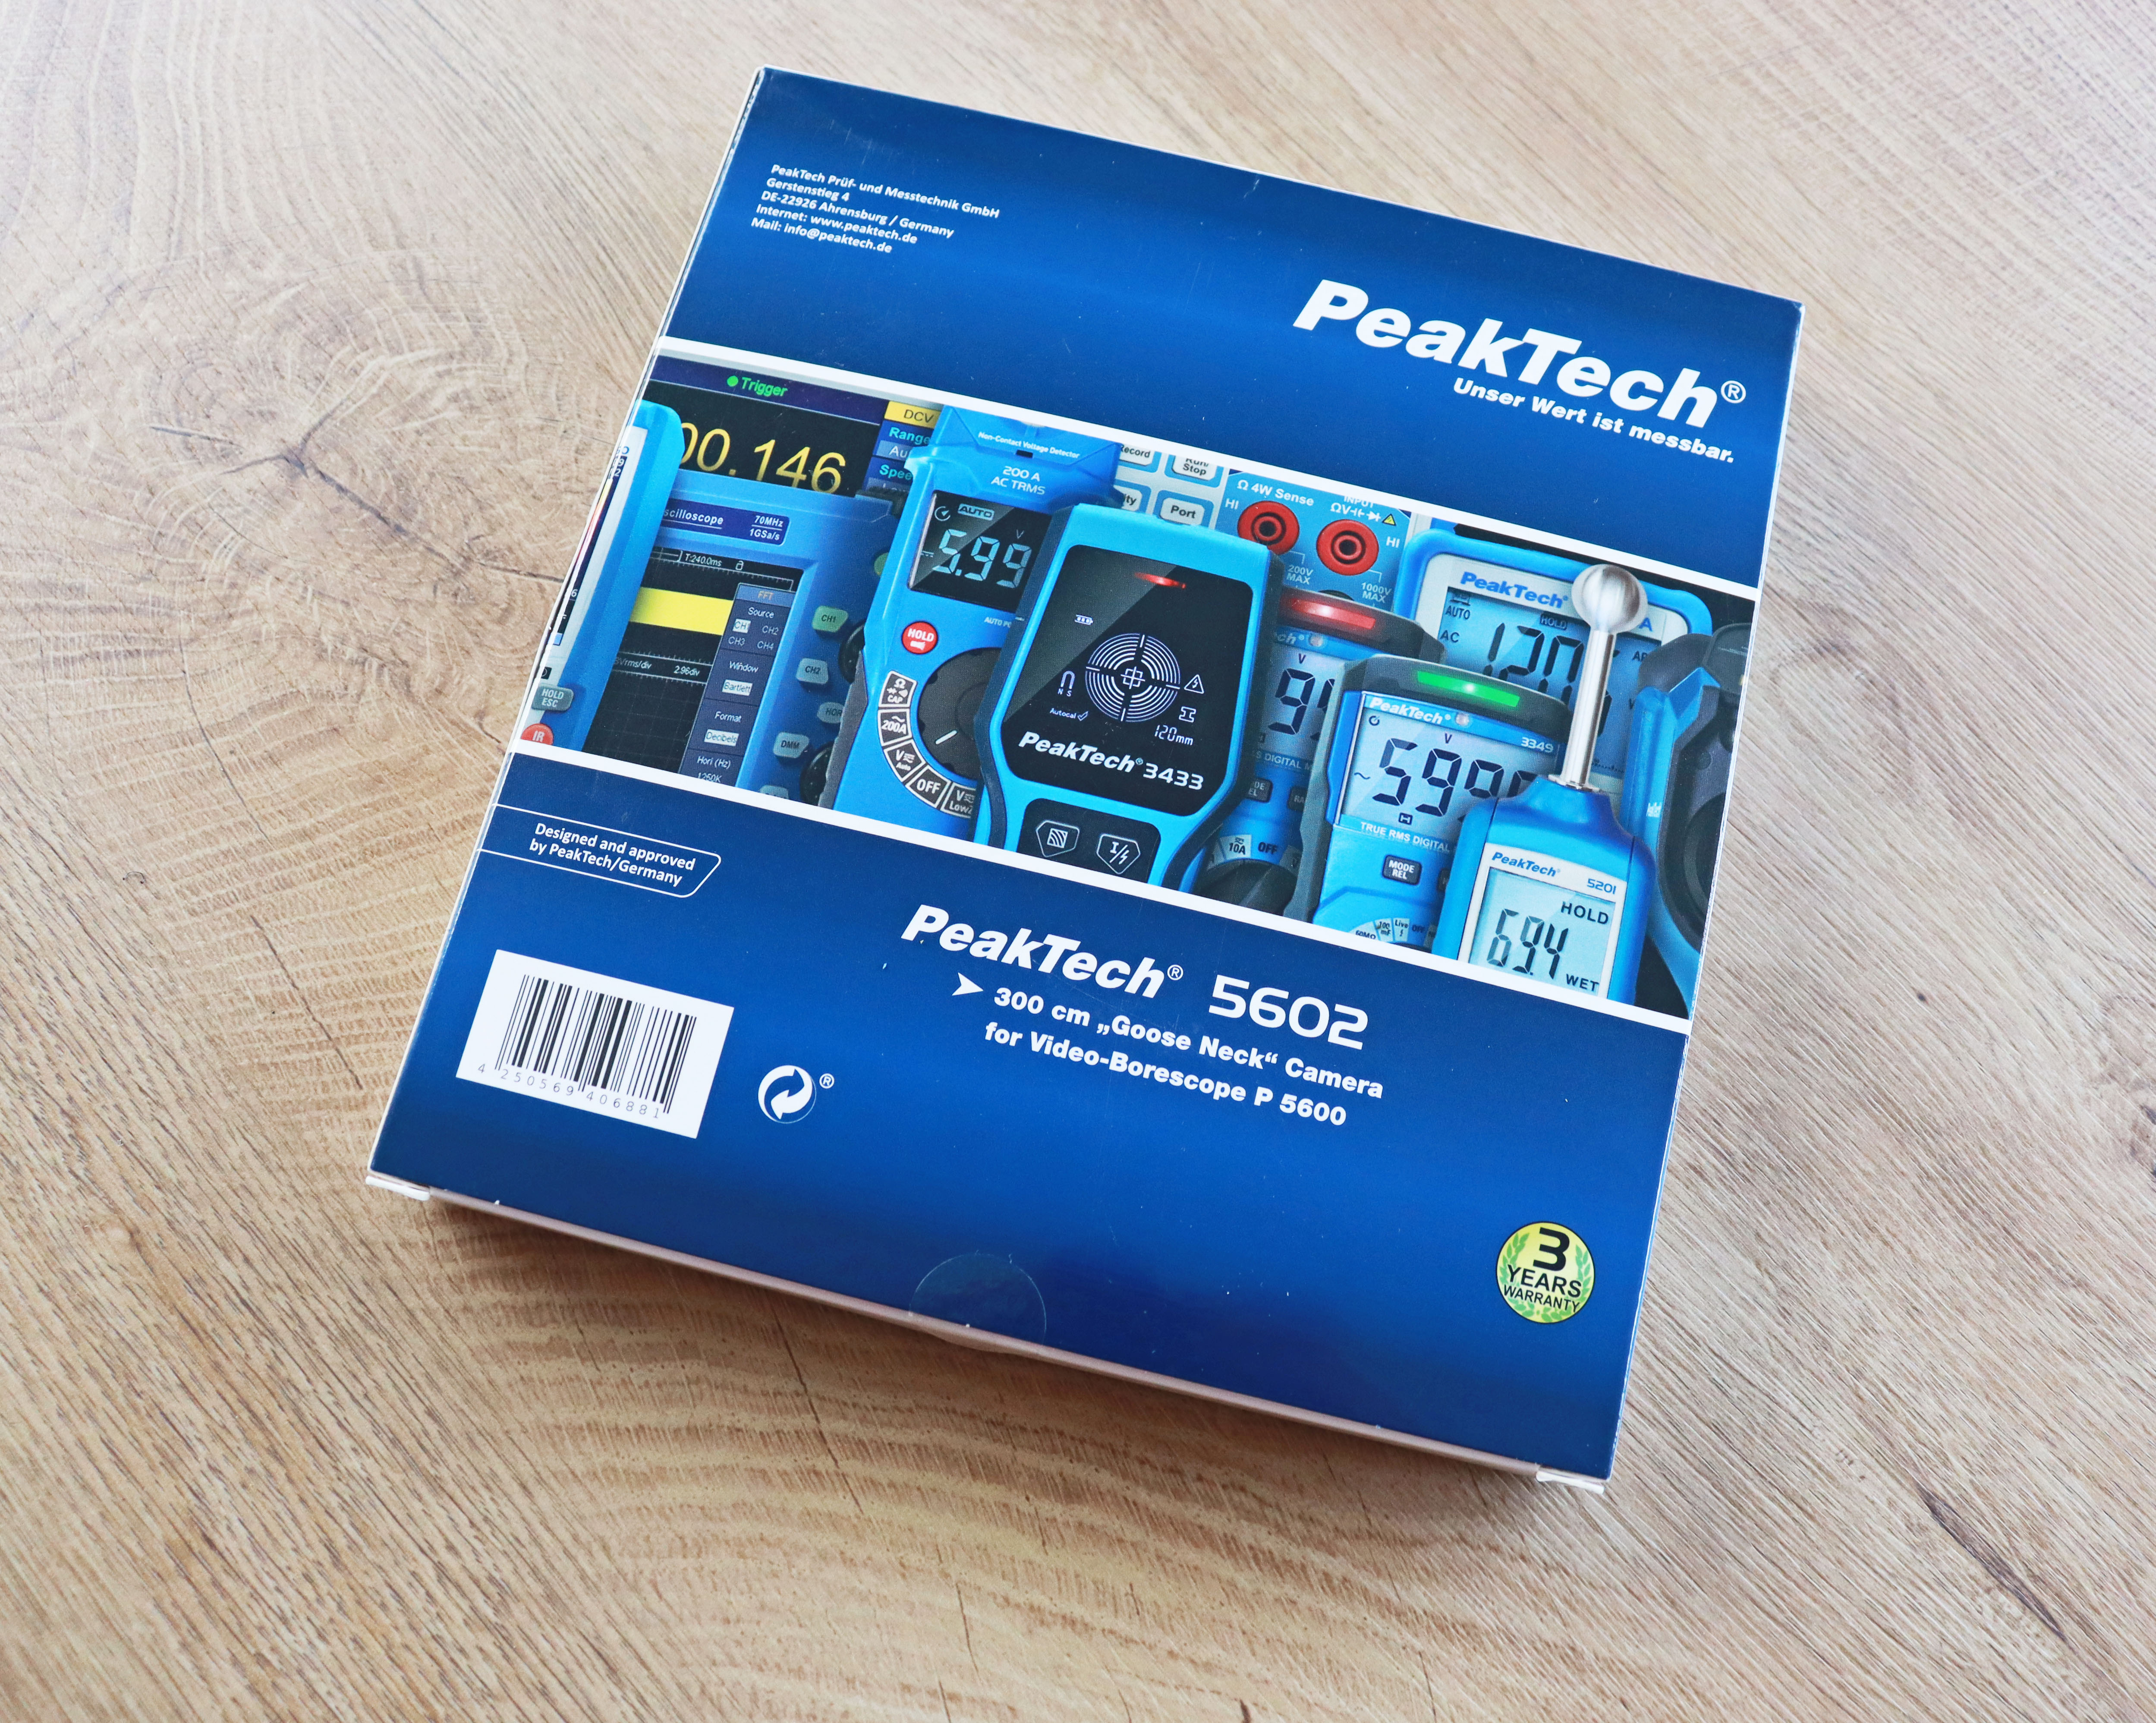 "PeakTech® P 5602" caméra supplémentaire avec col de cygne de 3 mètres pour PeakTech 5600